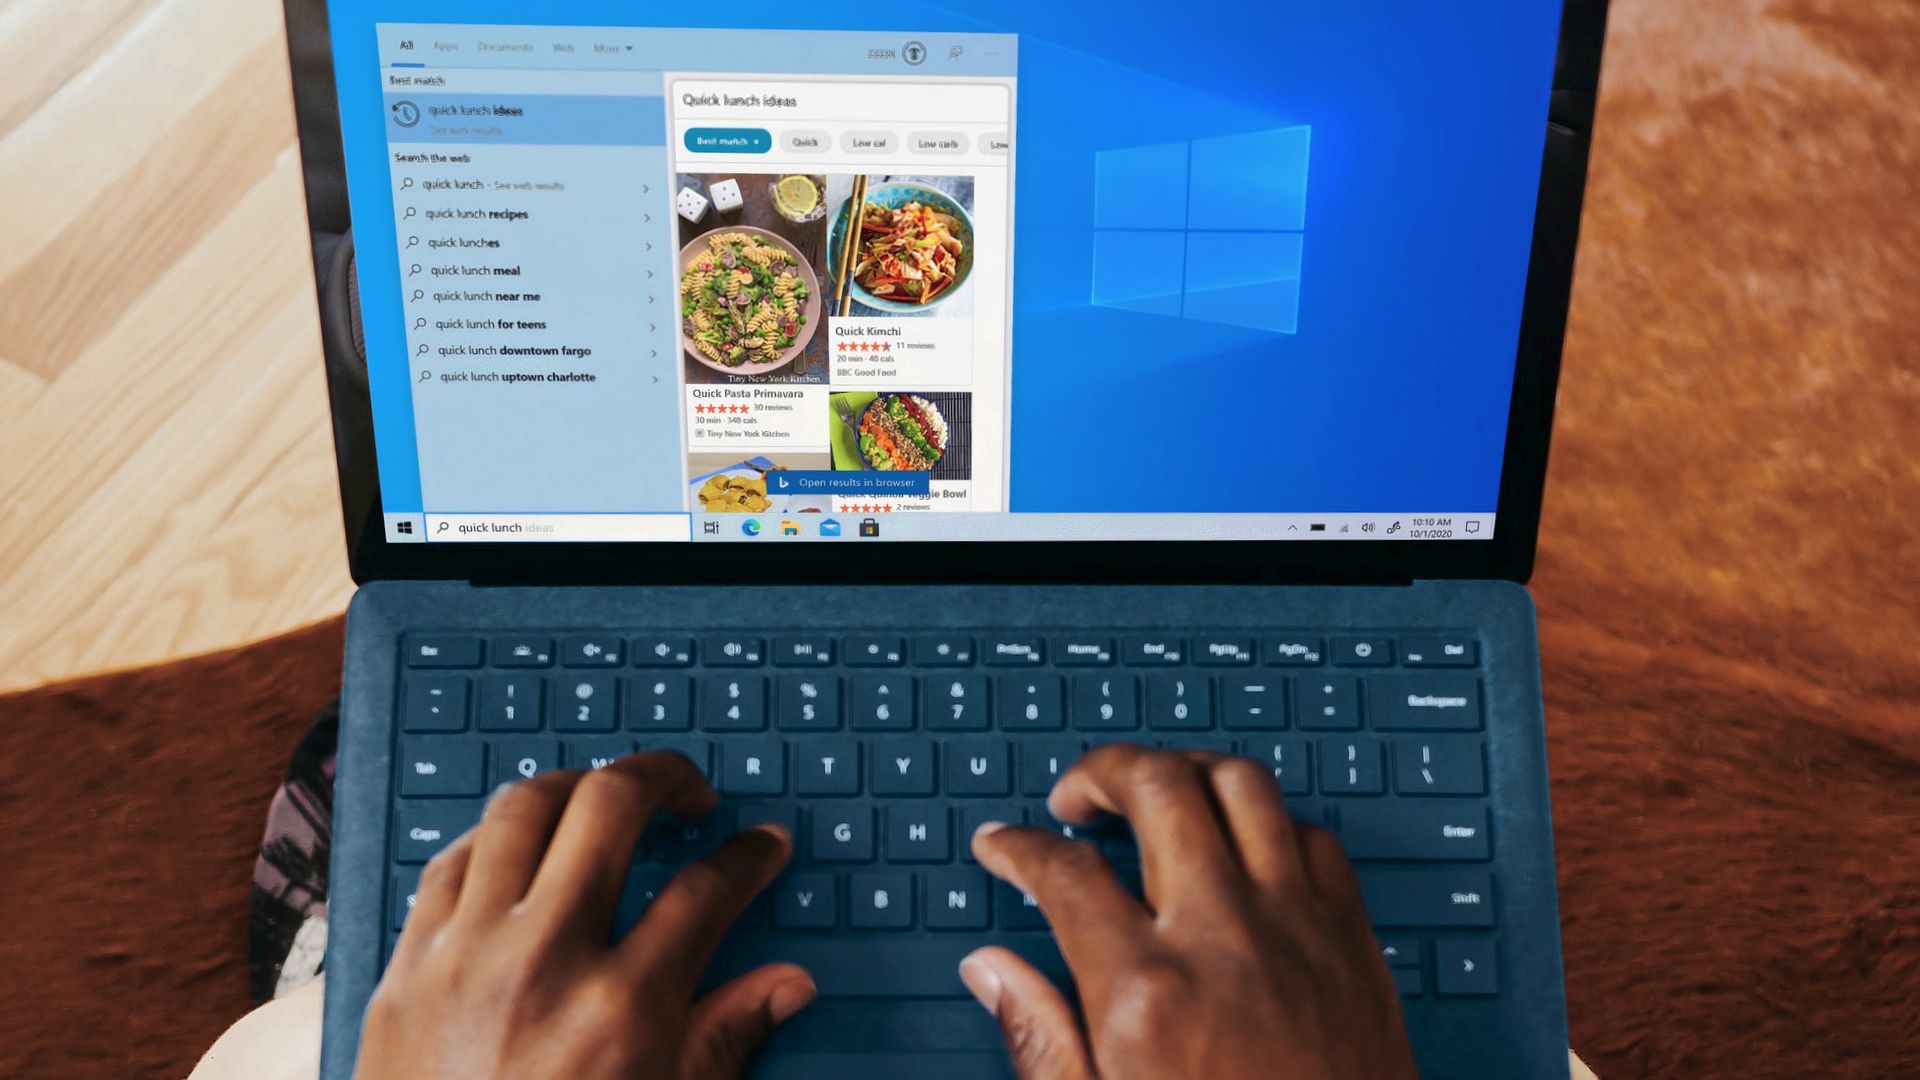 Windows 10 - Lentidão para iniciar e desligar - Microsoft Community